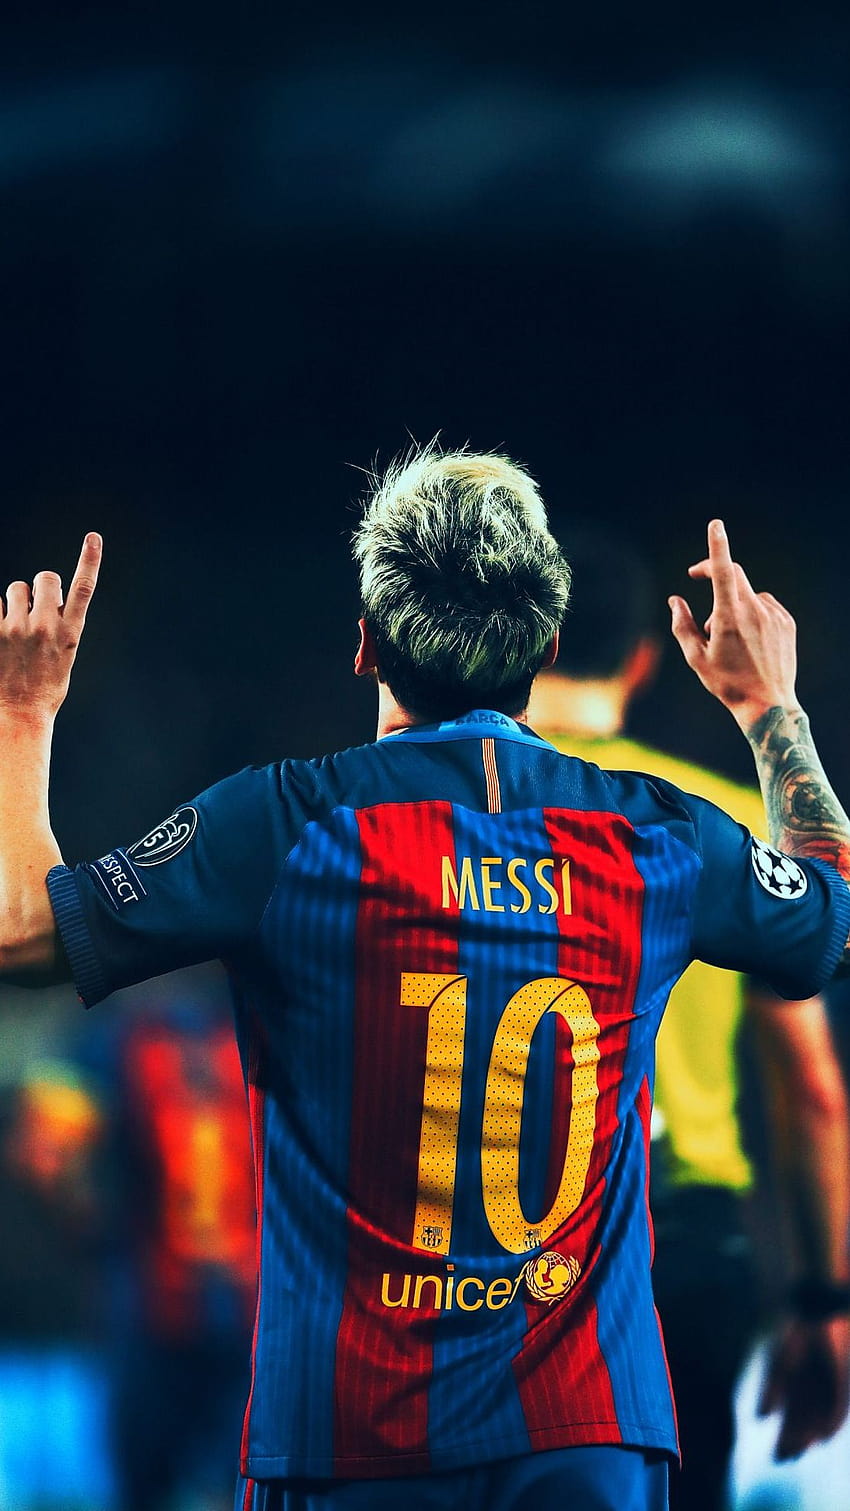 Cùng chiêm ngưỡng hình ảnh sống động của Messi - một trong những cầu thủ vĩ đại nhất lịch sử bóng đá.